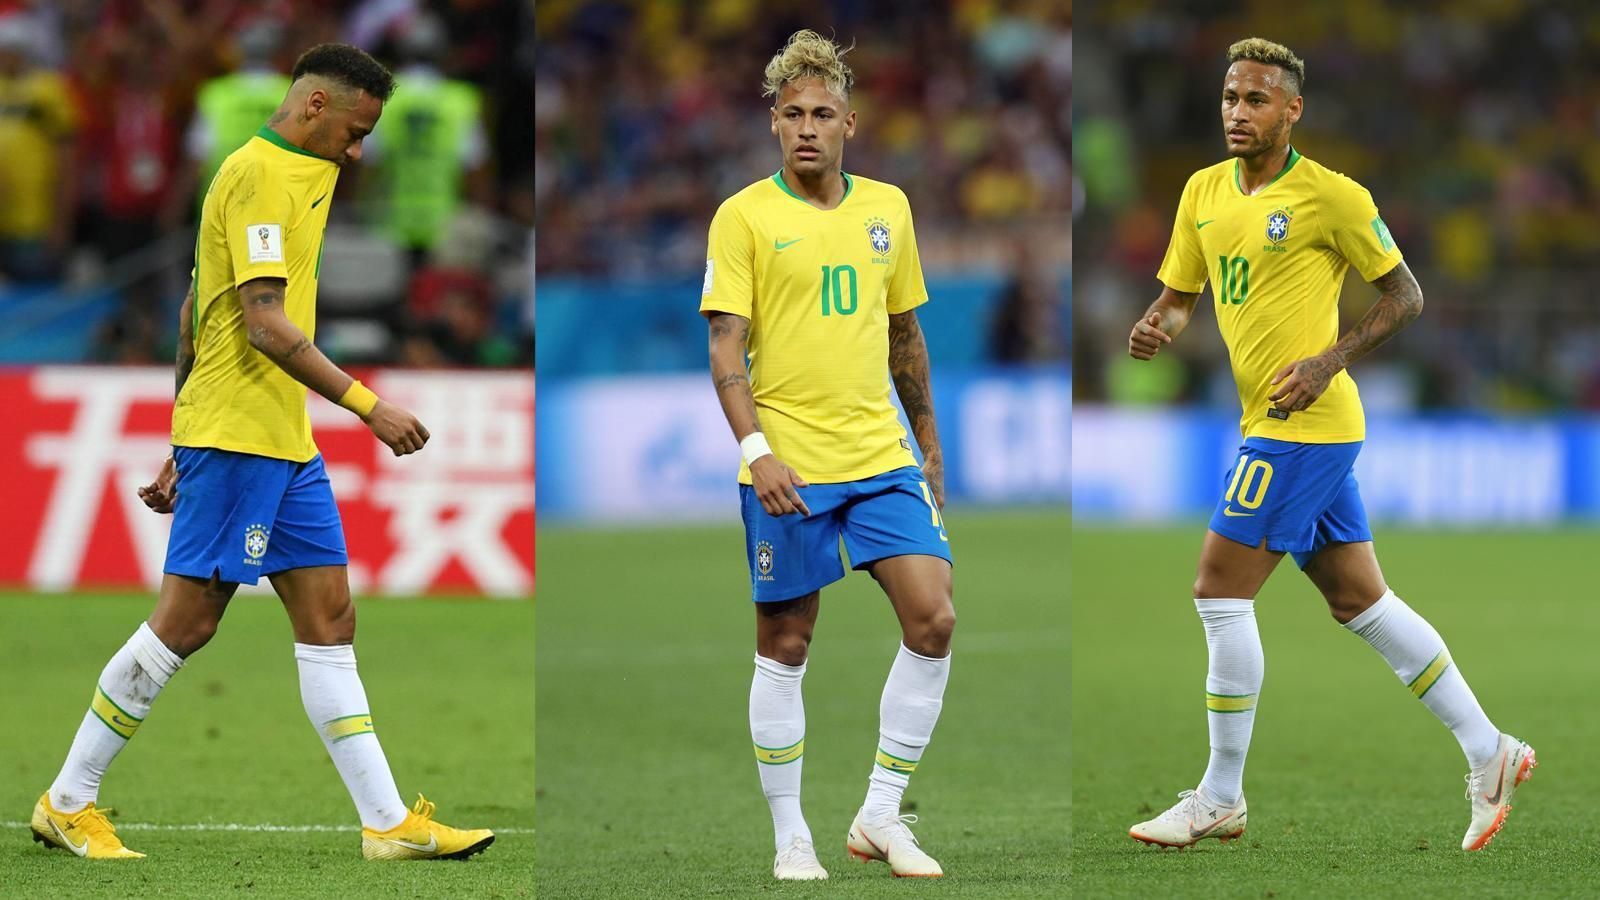 
                <strong>Neymar mit mehr Frisuren als Toren bei der WM 2018</strong><br>
                Der Fußball hatte bei Neymar während der WM wohl nicht die oberste Priorität. Denn der Brasilianer wechselte häufiger seine Frisur, als er über seine Tore jubeln konnte. Insgesamt konnte die Fußball-Welt beim 26-Jährigen drei verschiedene Frisuren während der WM in Russland beobachten. Tore erzielte der PSG-Star allerdings nur zwei in Russland.
              